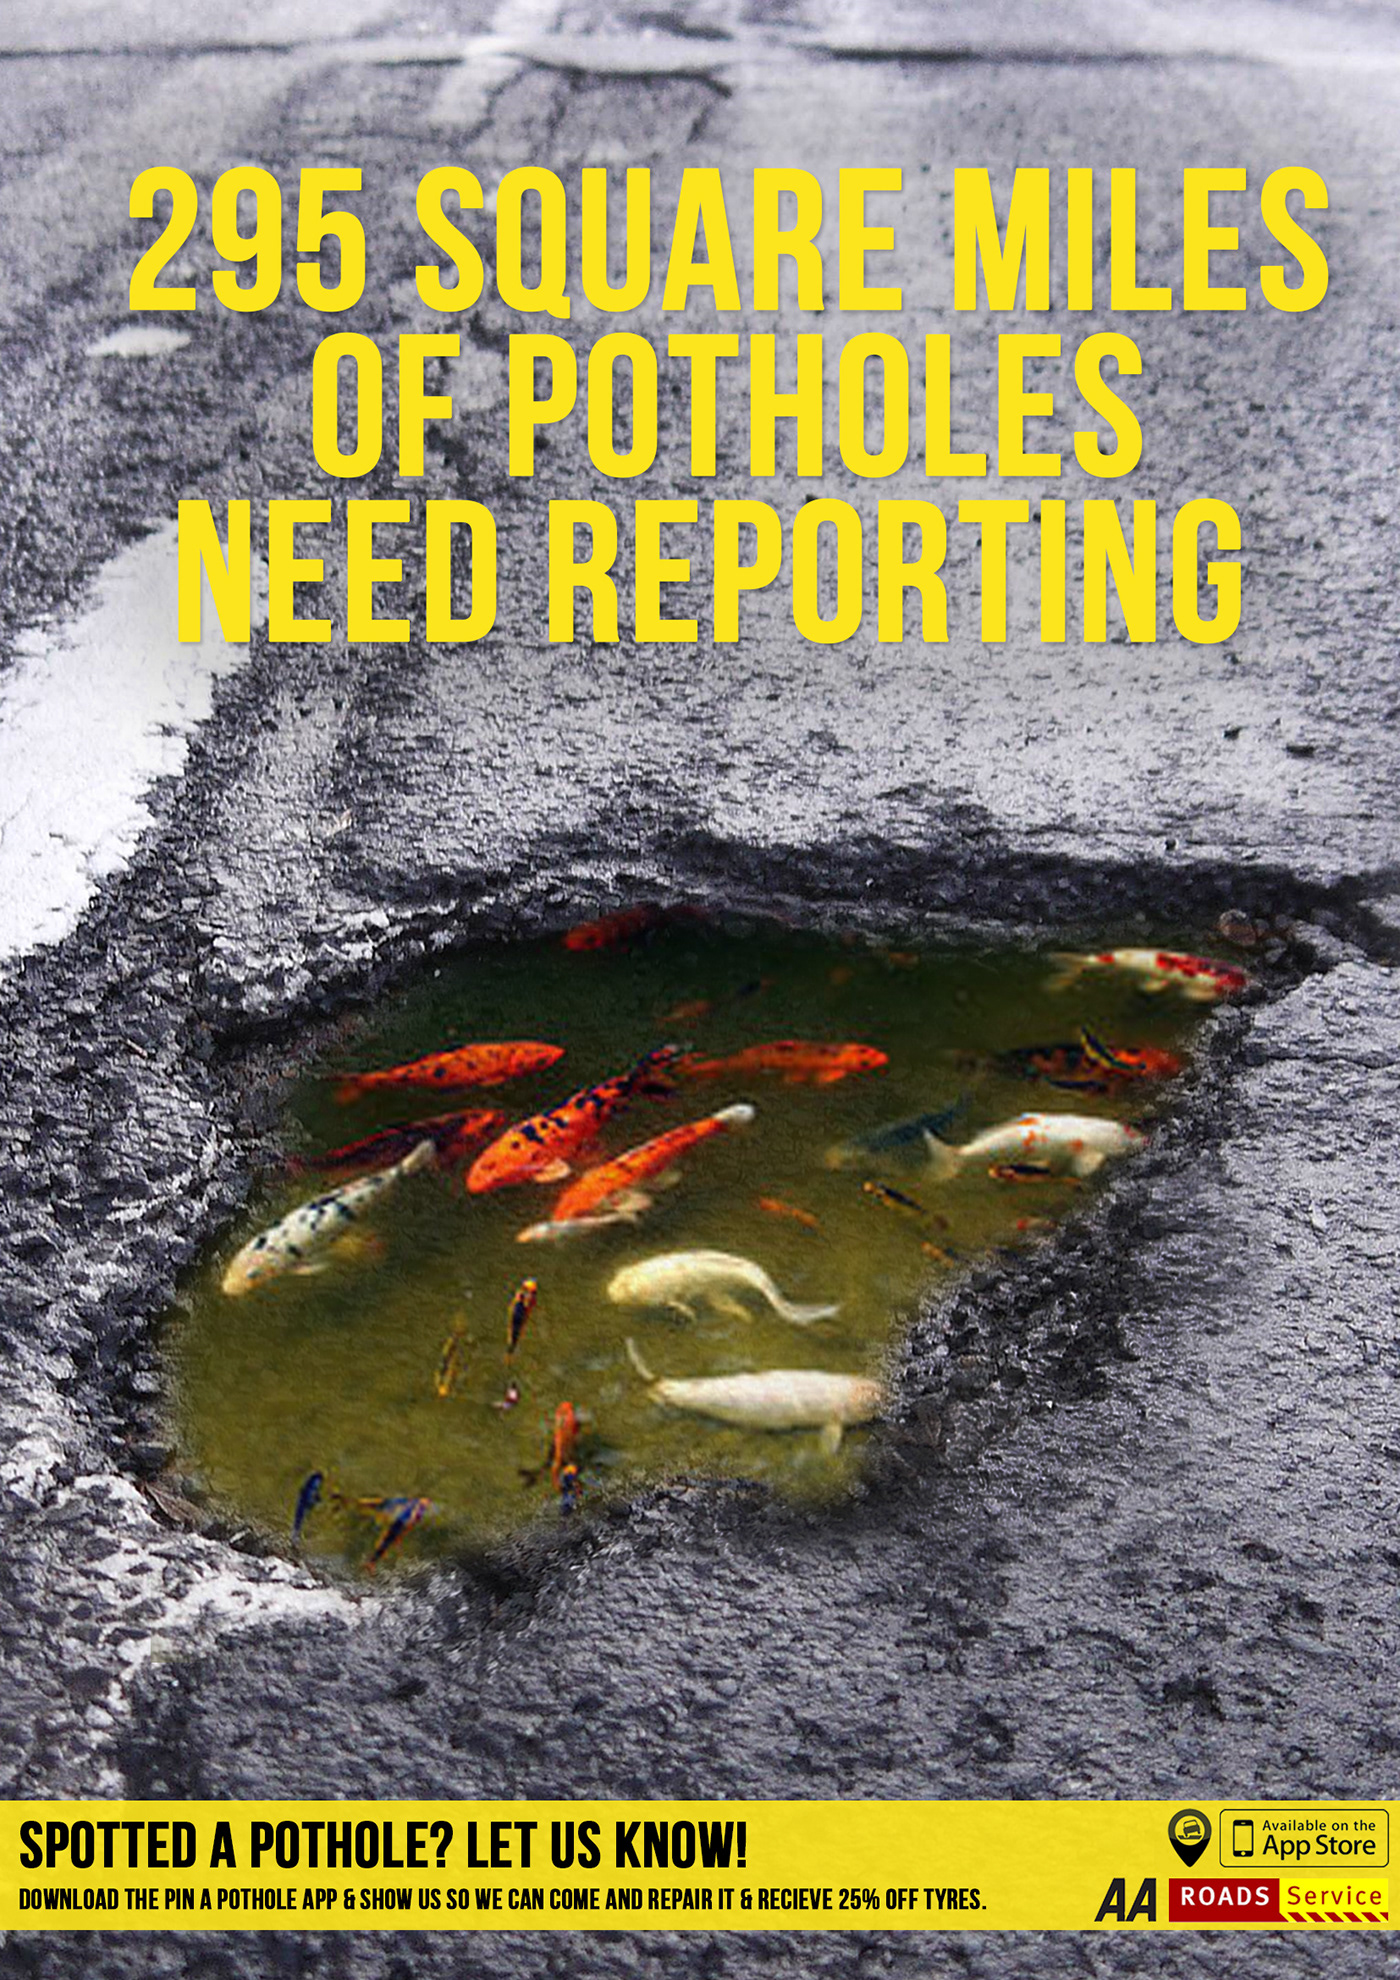 gov report a pothole